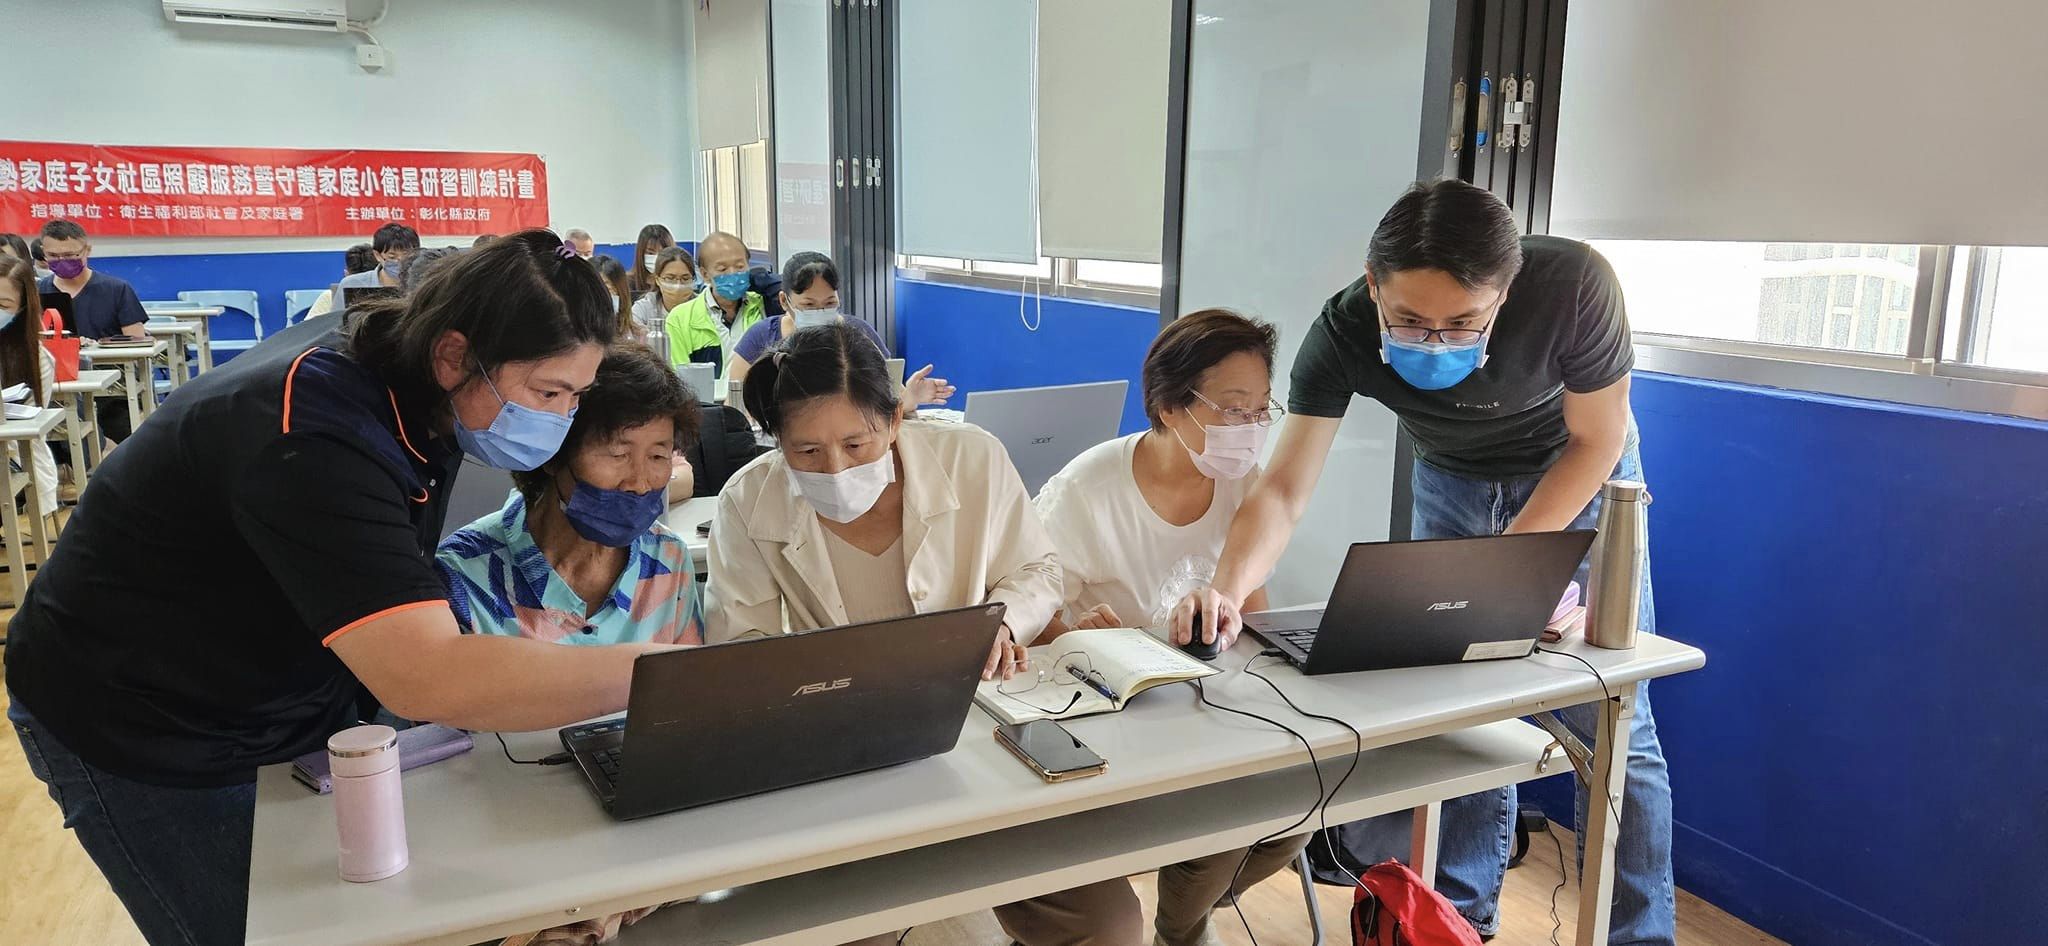 吳彥杰老師指導社區人員親自操作電腦，強化數位能力。